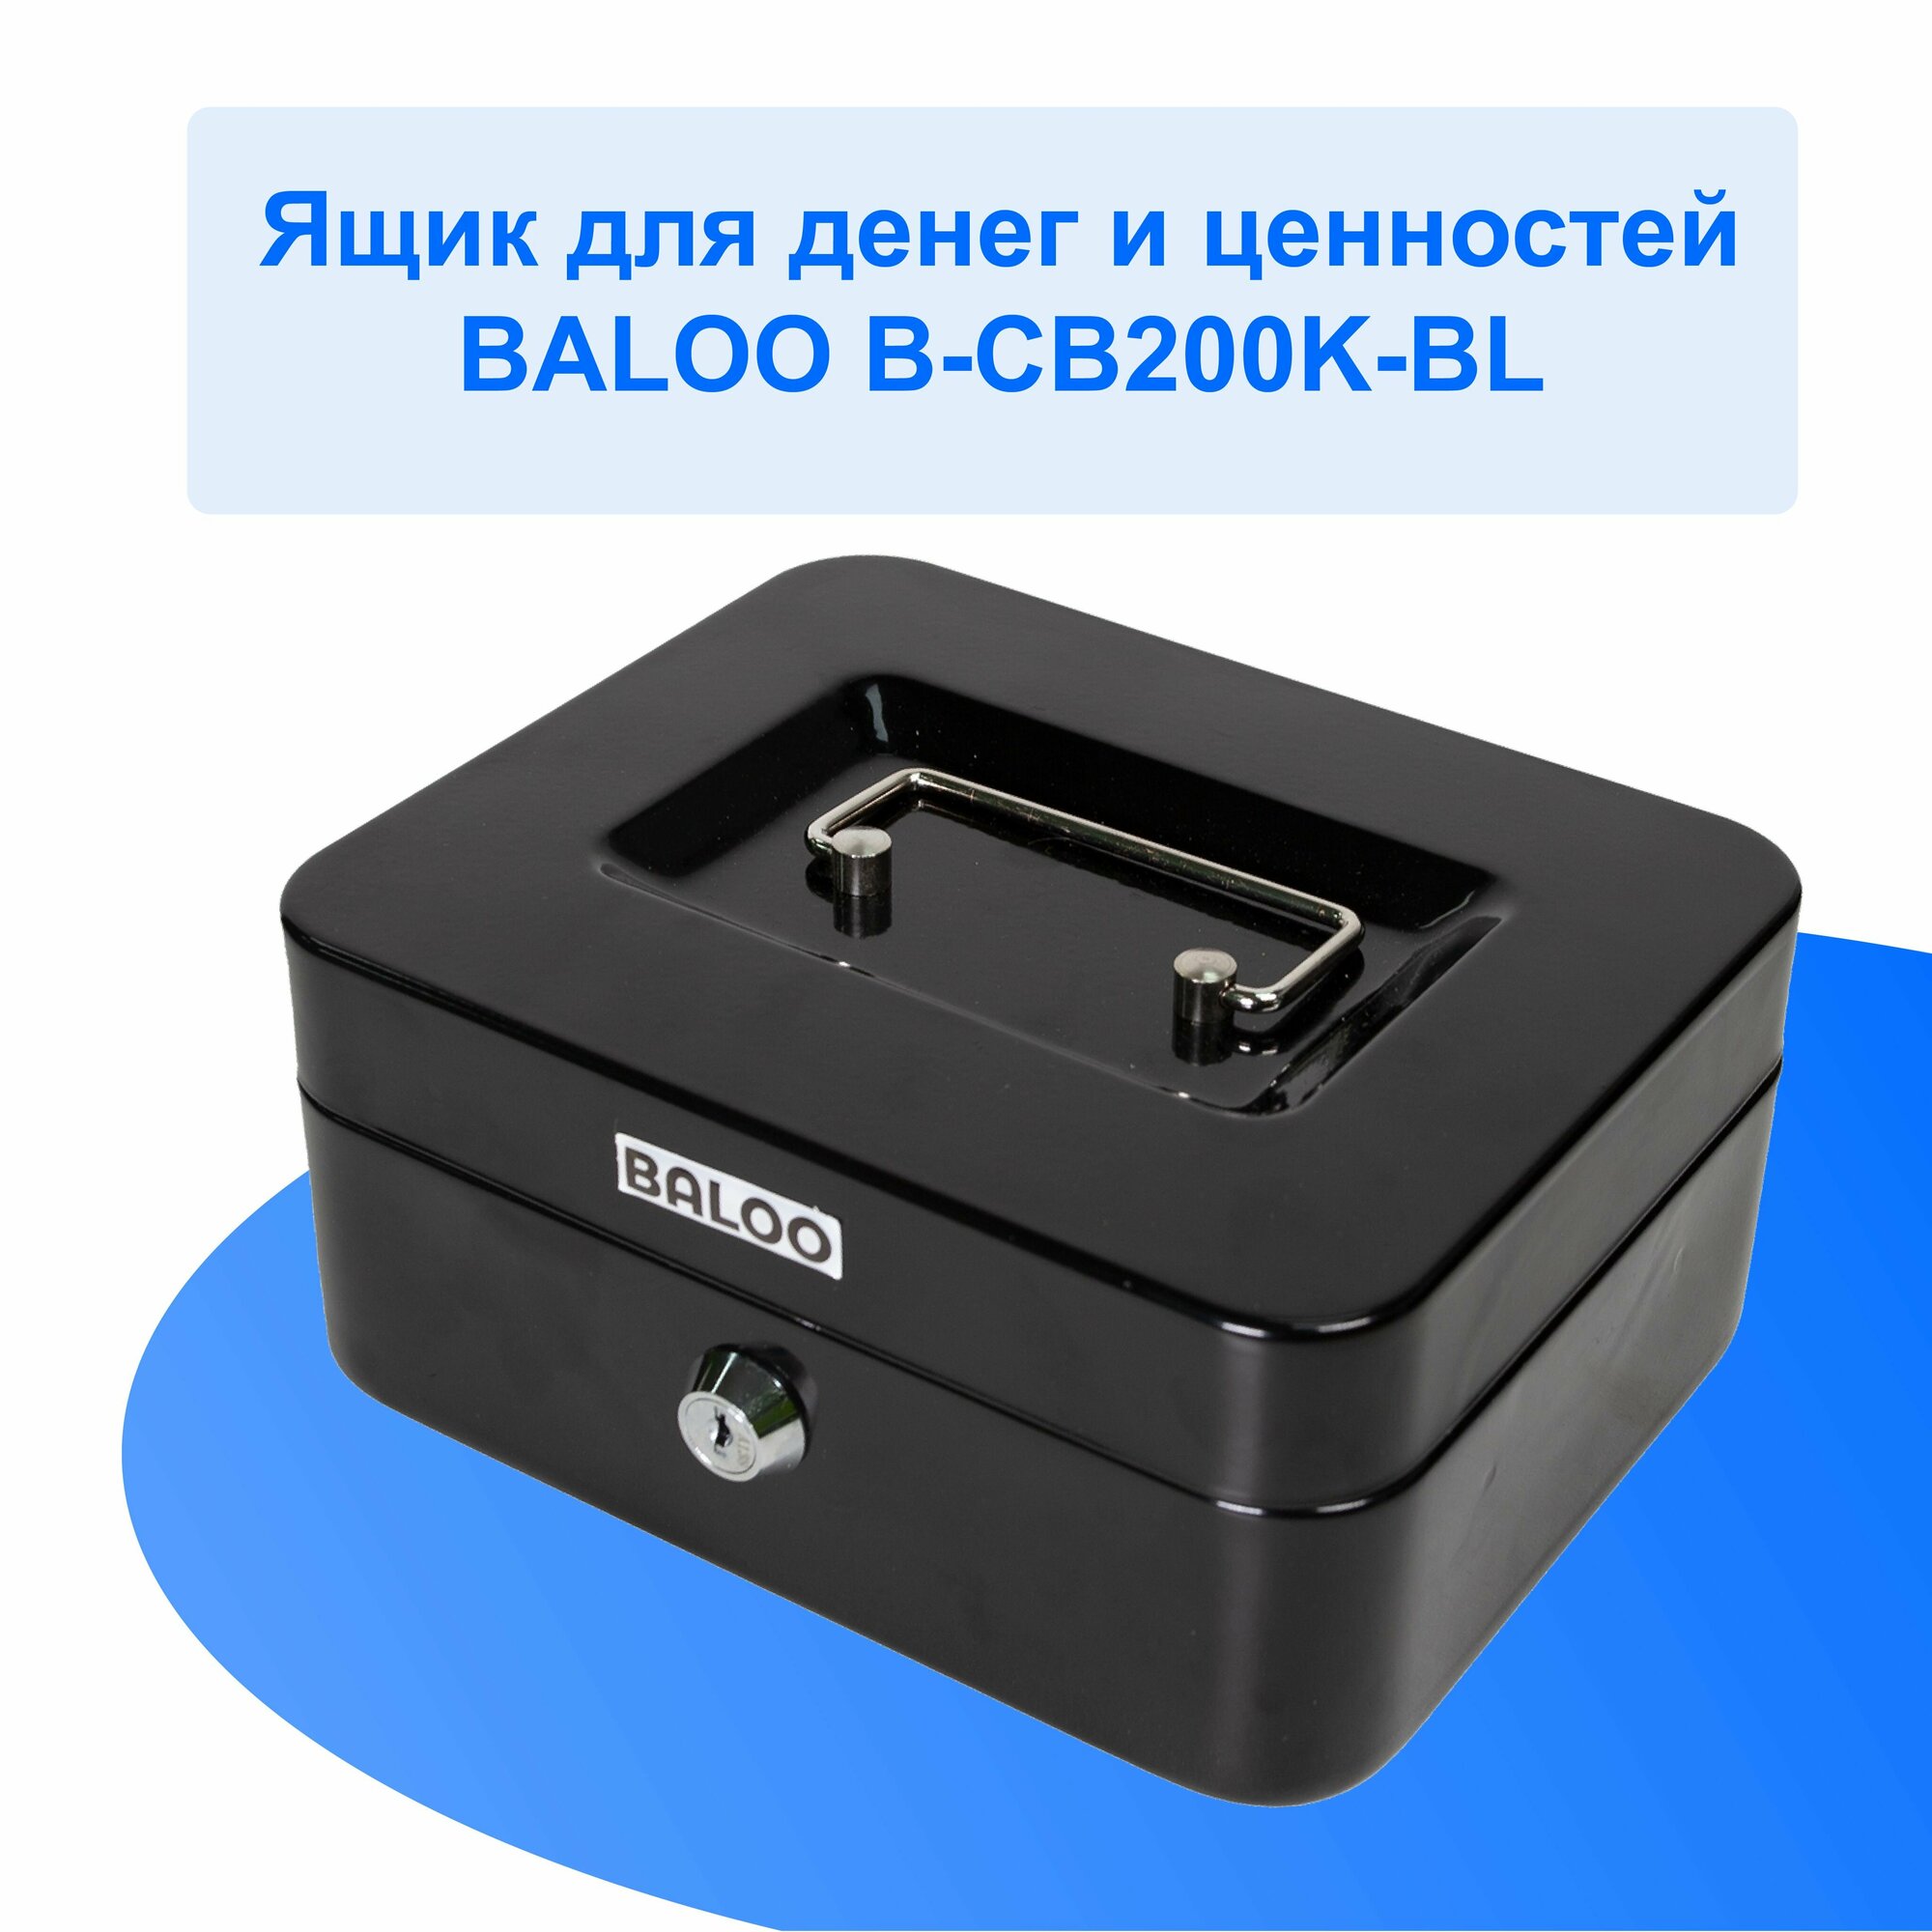 Ящик для денег и ценностей Baloo B-CB200K-BL 200x160x90мм ключевой черный